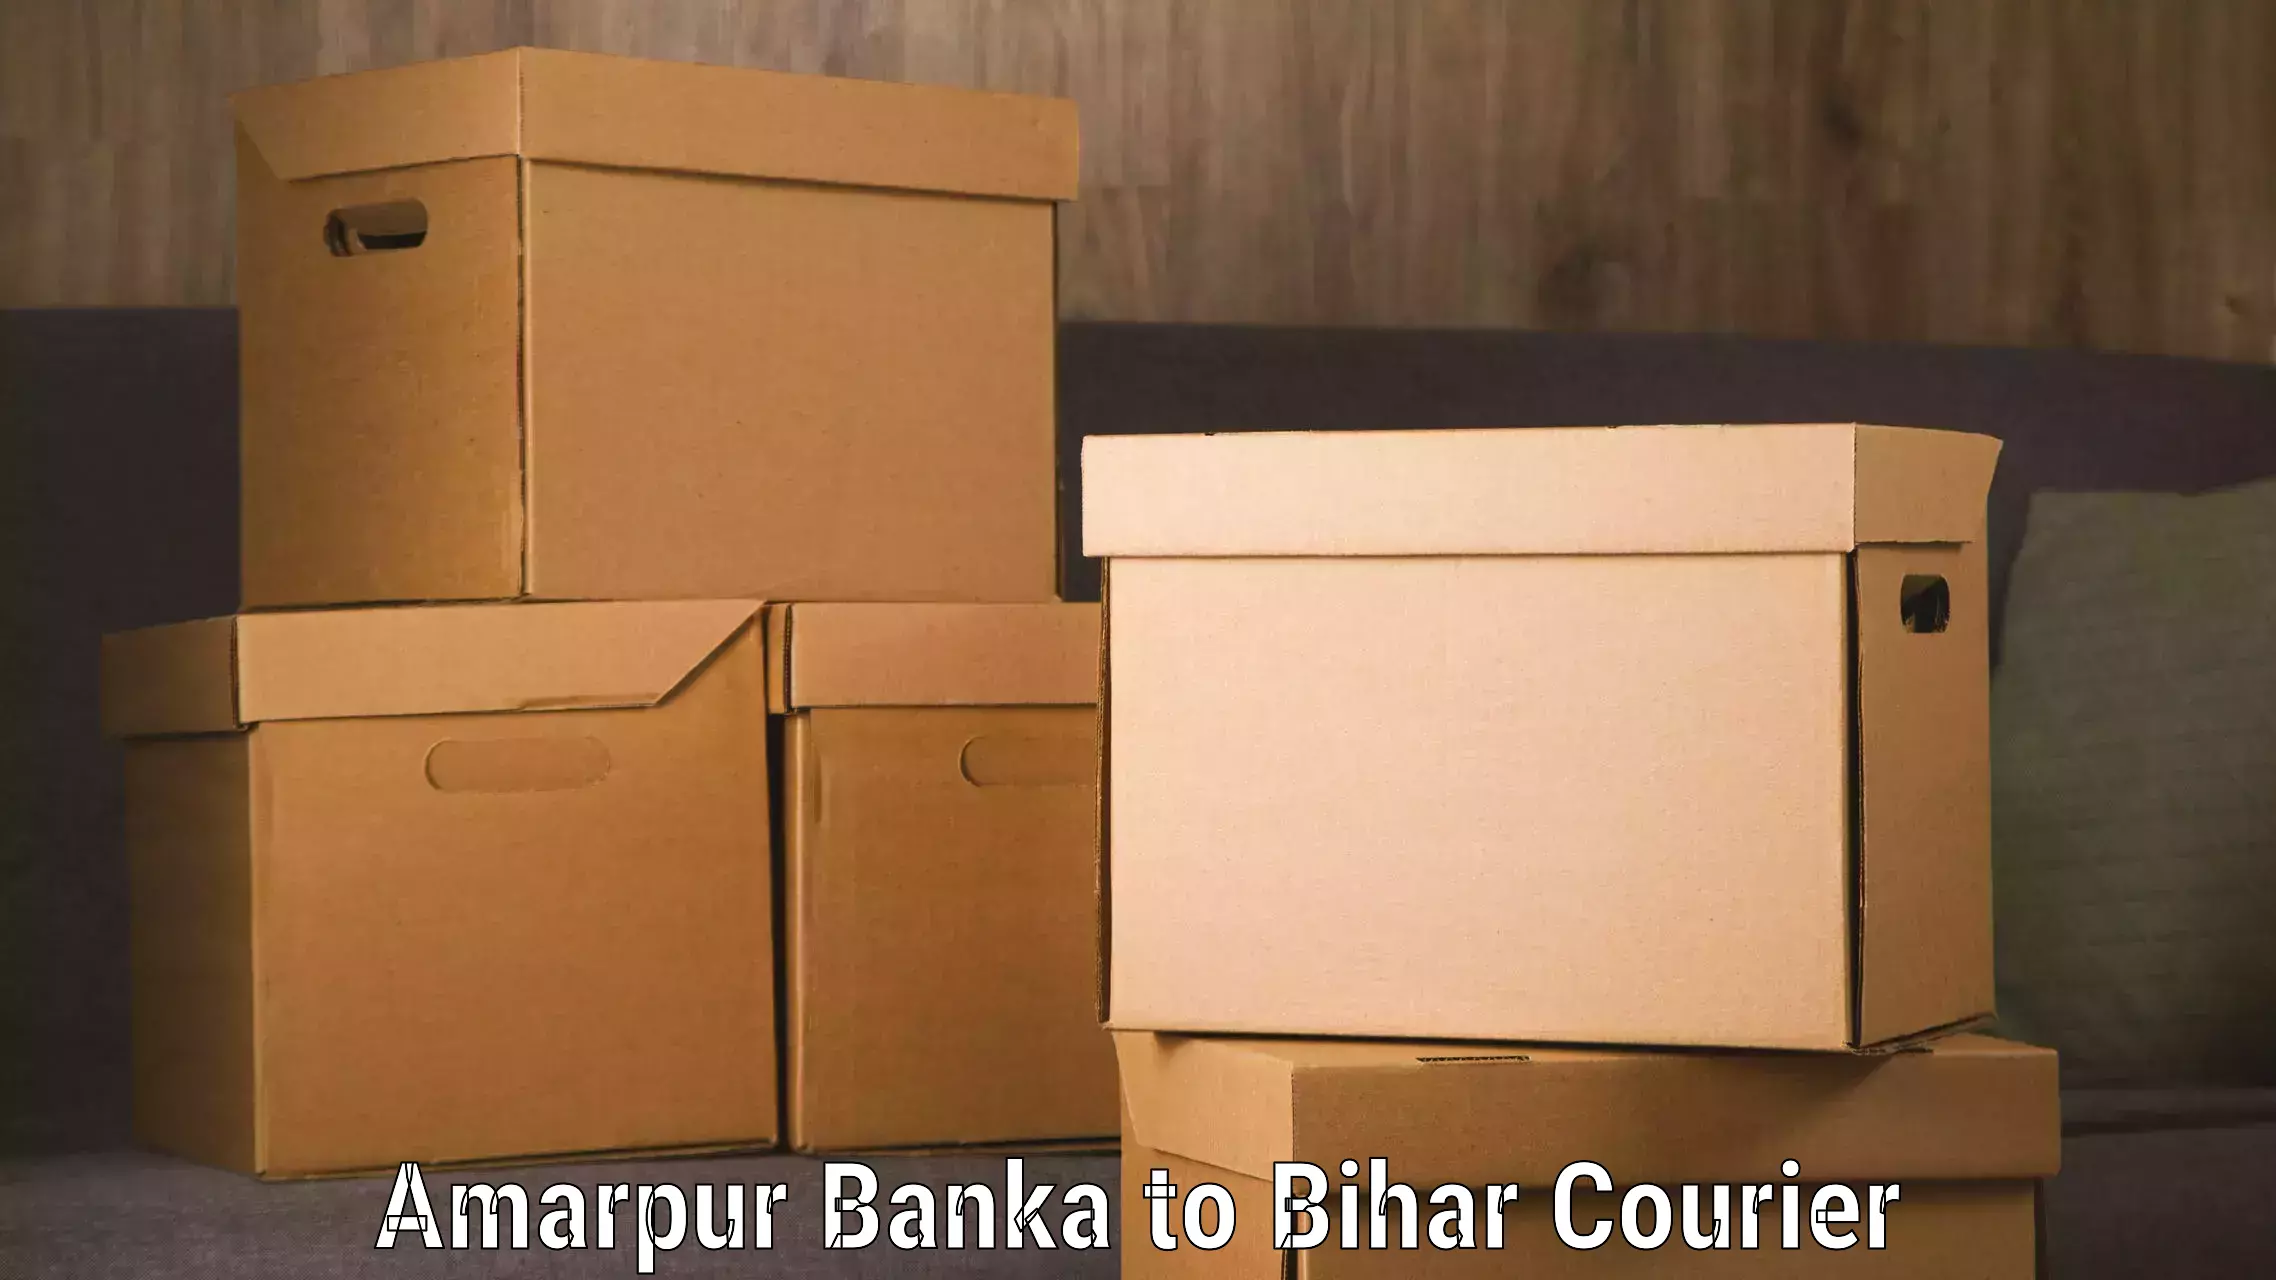 Luggage transport service Amarpur Banka to Jiwdhara